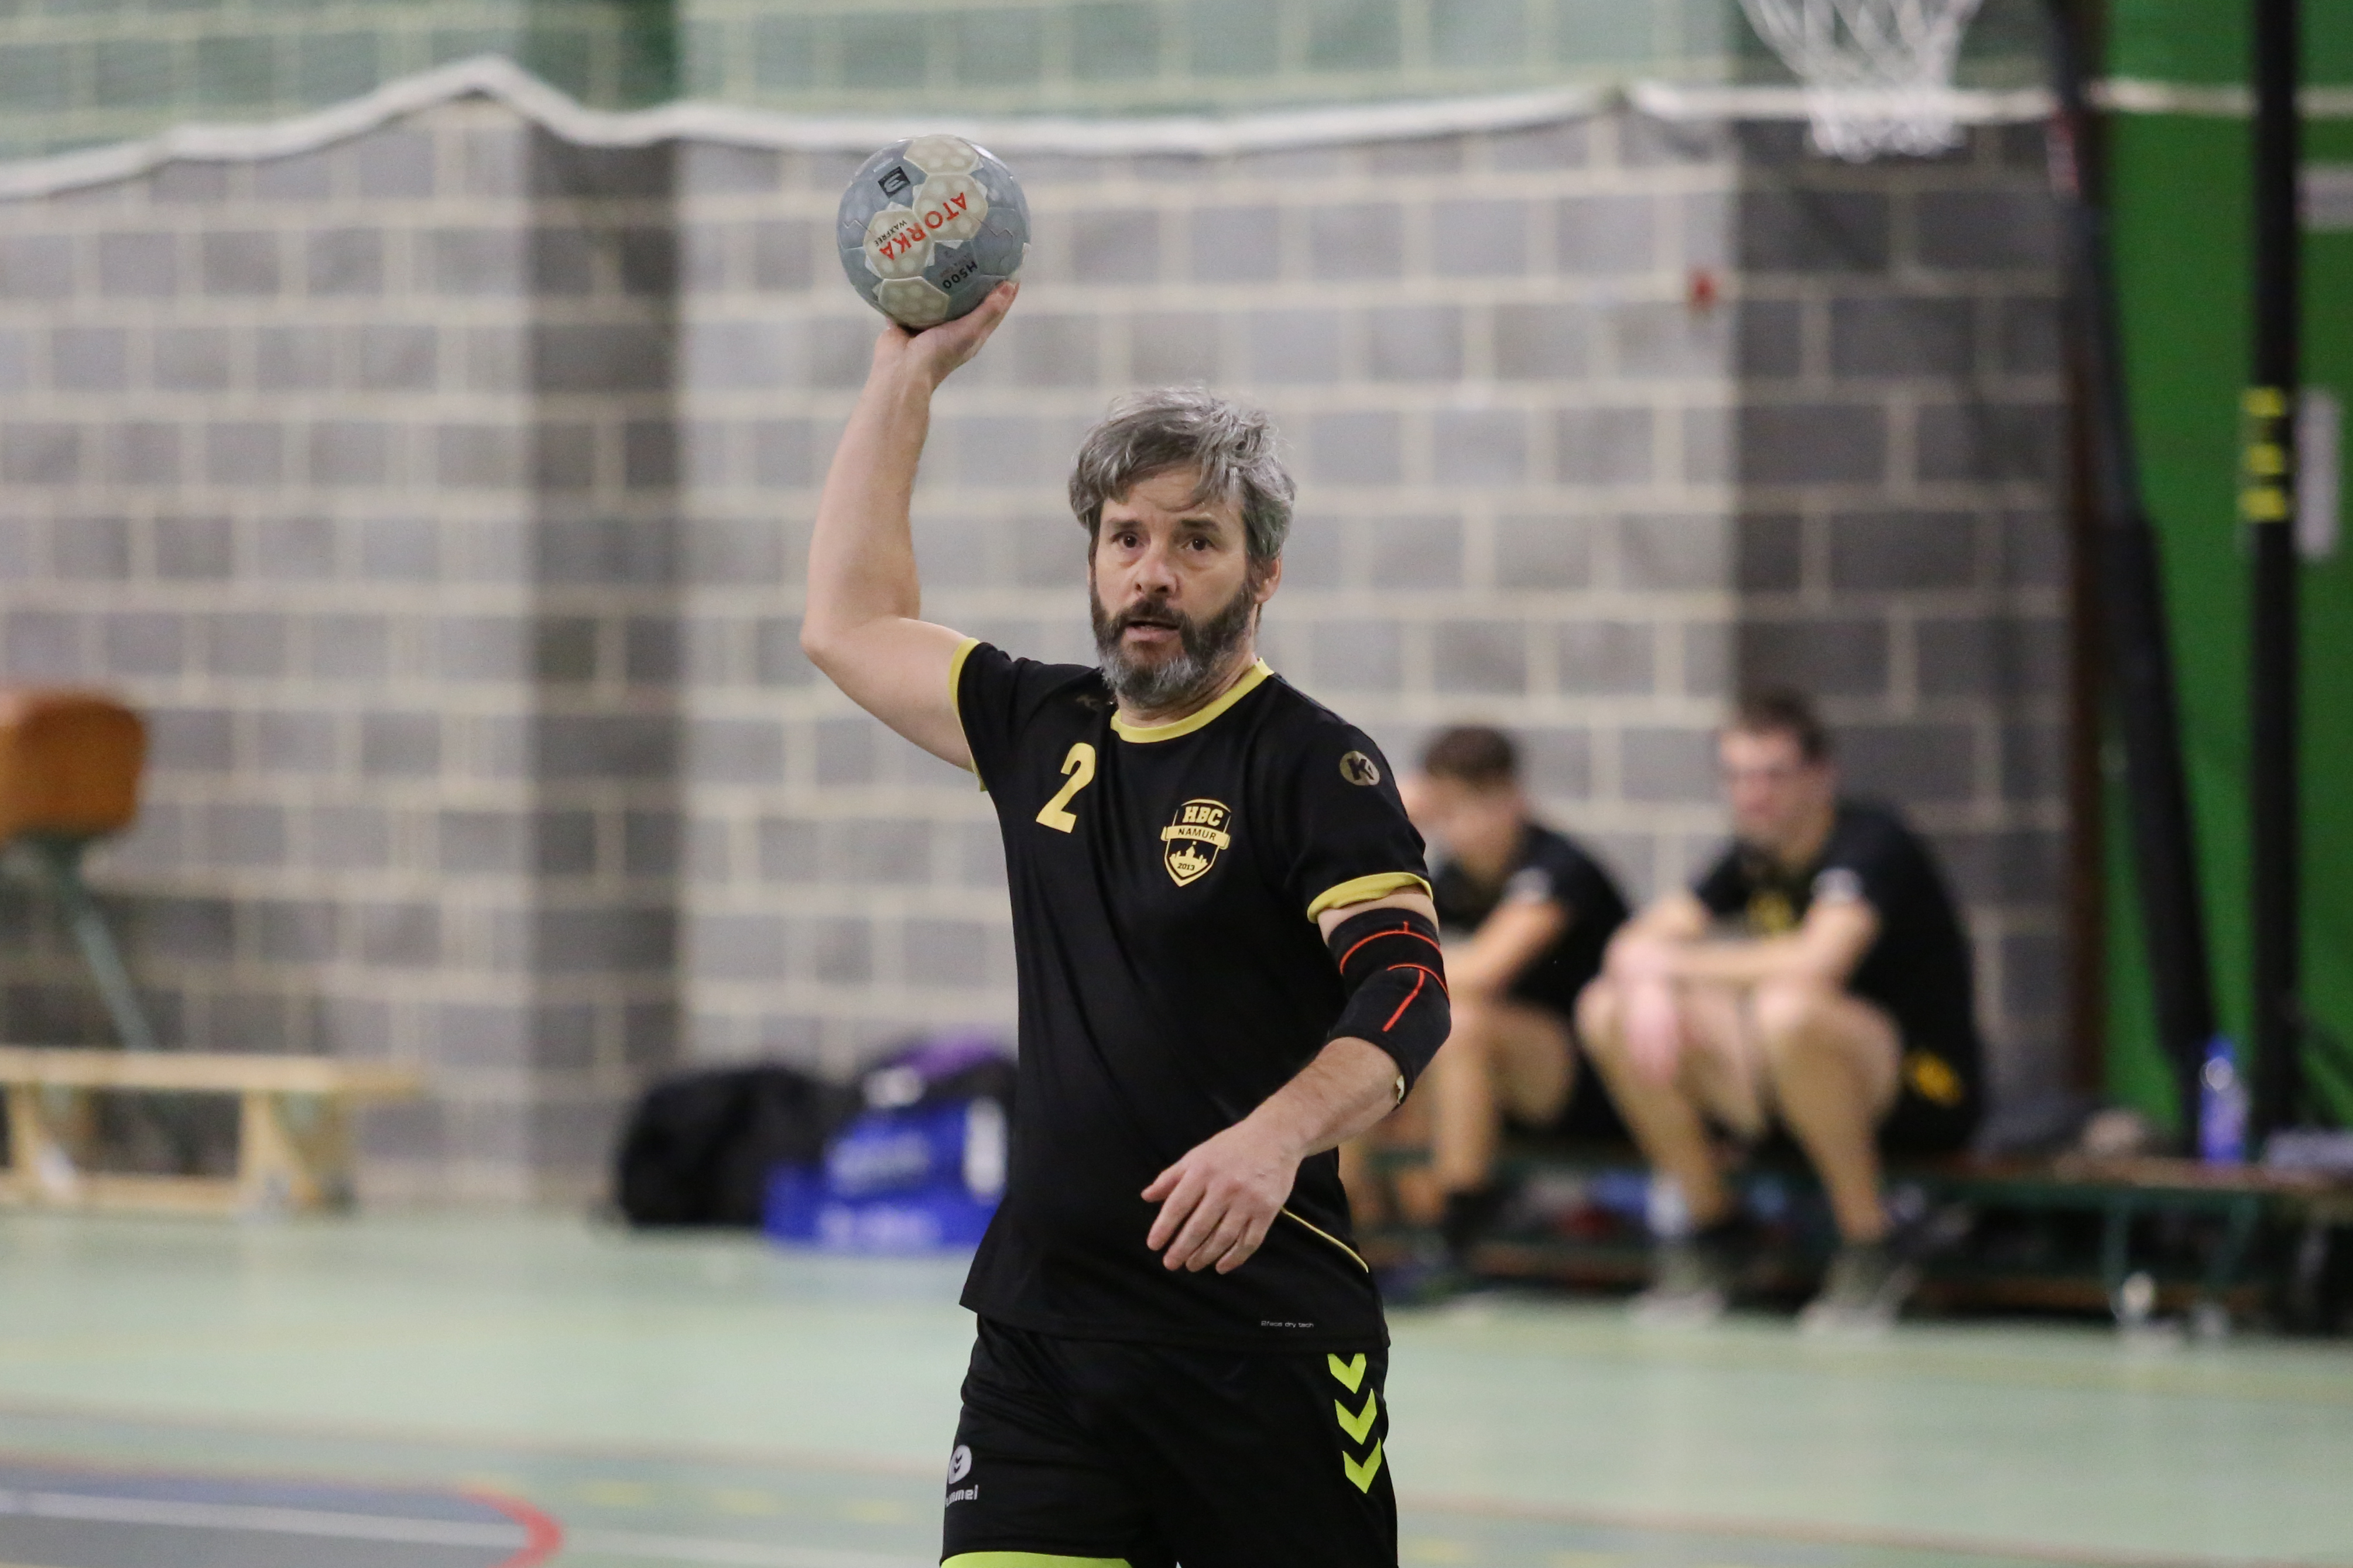 Handball] Coupe de Luxembourg : la Coque n'est plus si loin…